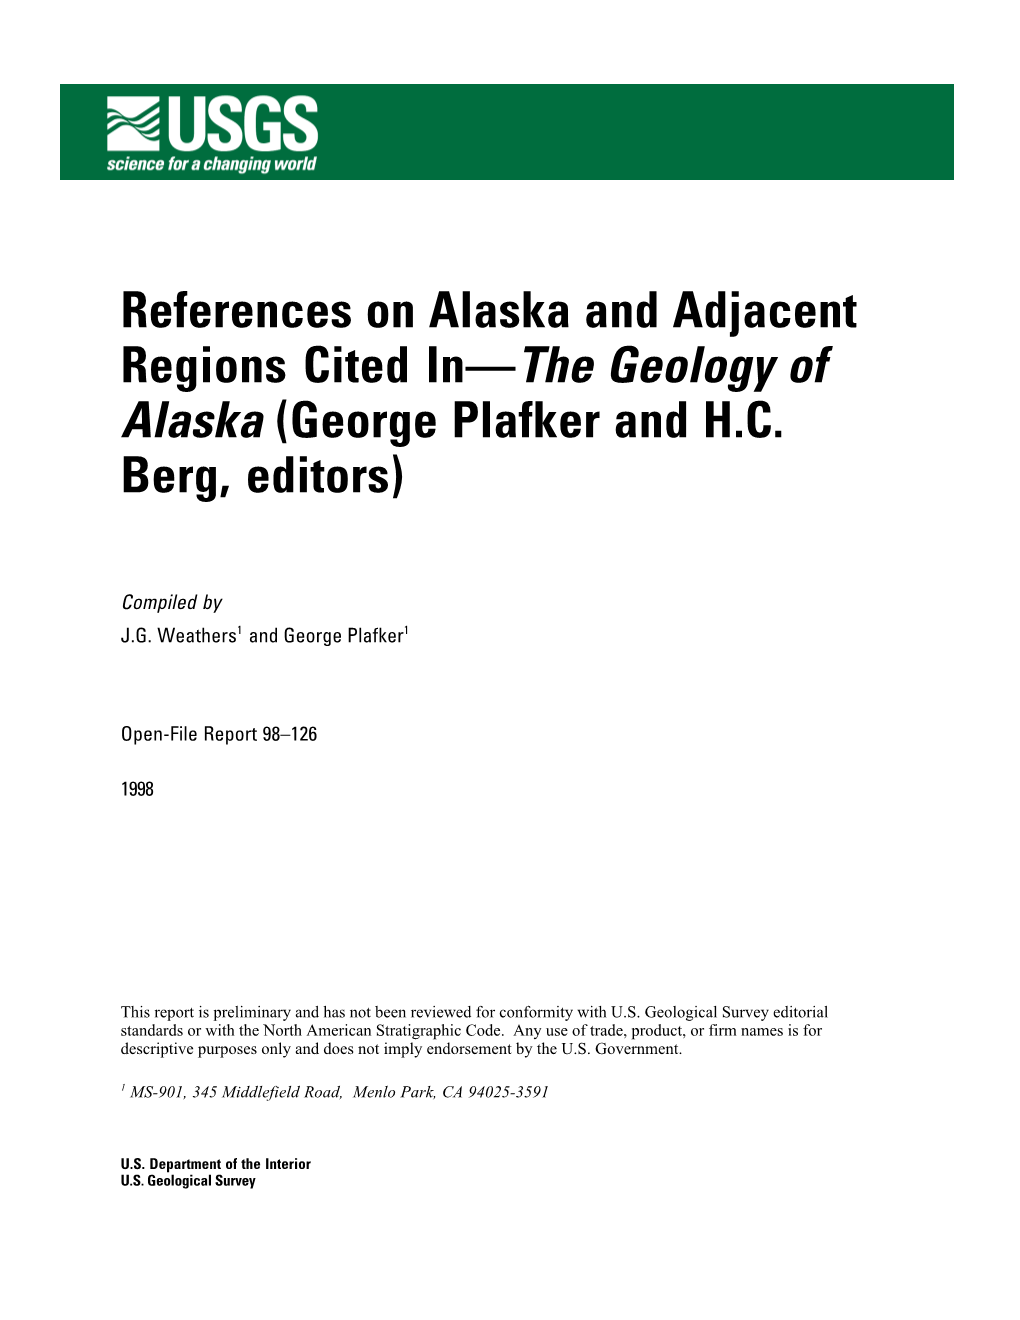 U.S. Geological Survey Open-File Report 98-126, 181 P